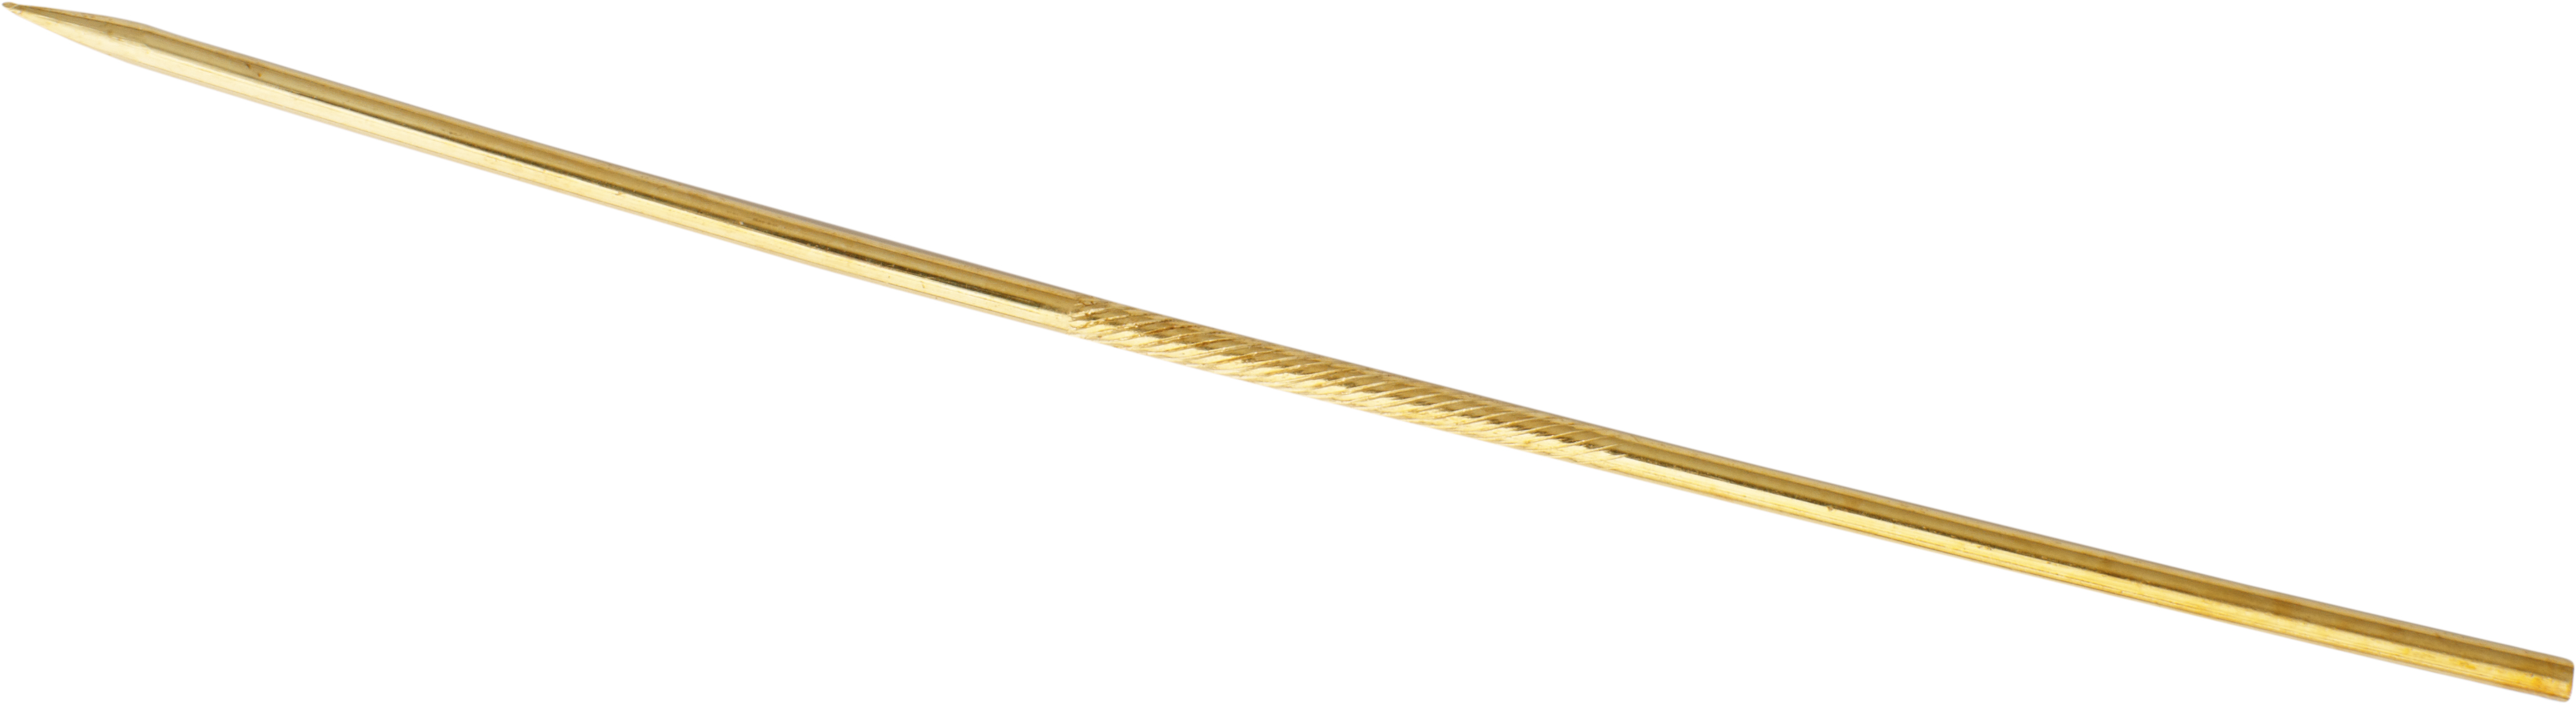 dasspeld goud 750/-gg lengte 60,00mm, recht